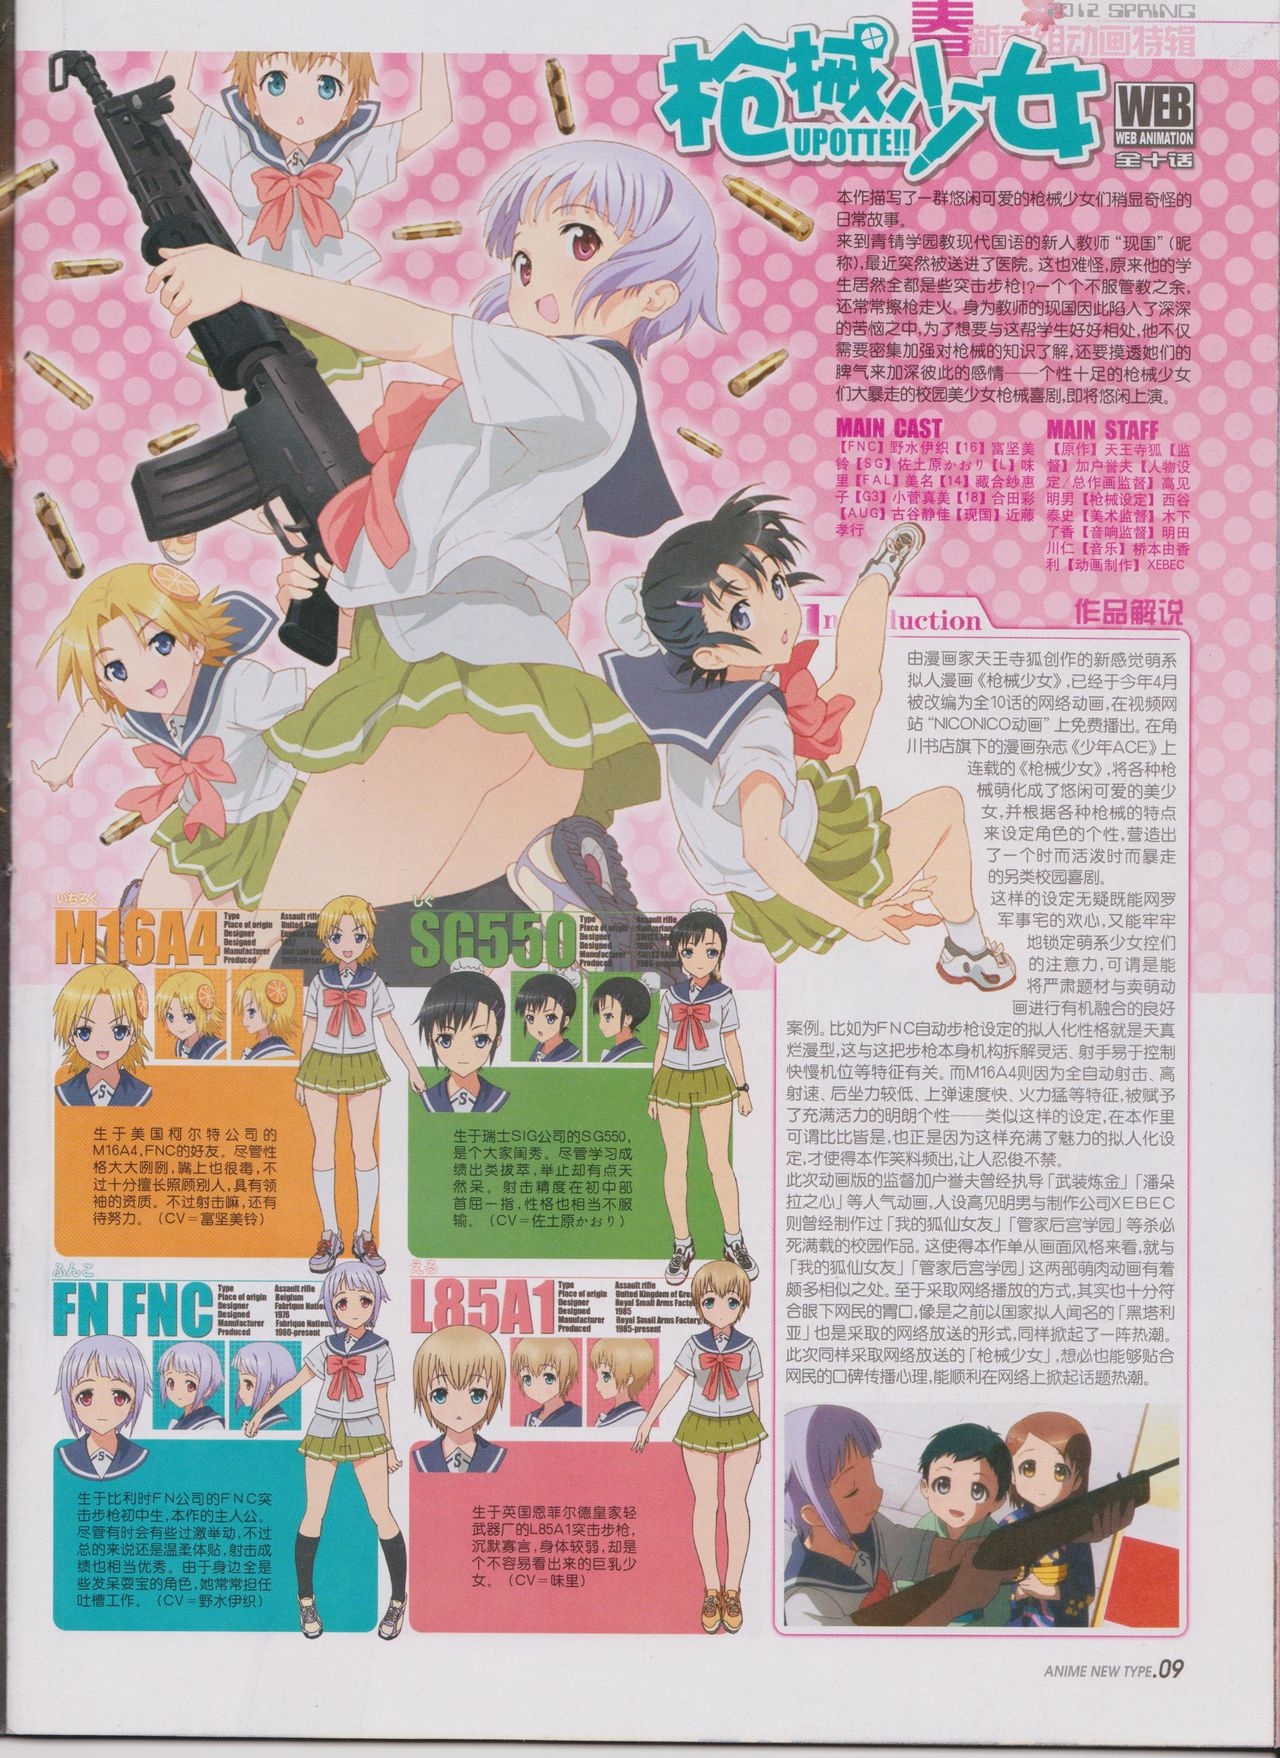 Anime New Type Vol.111 10